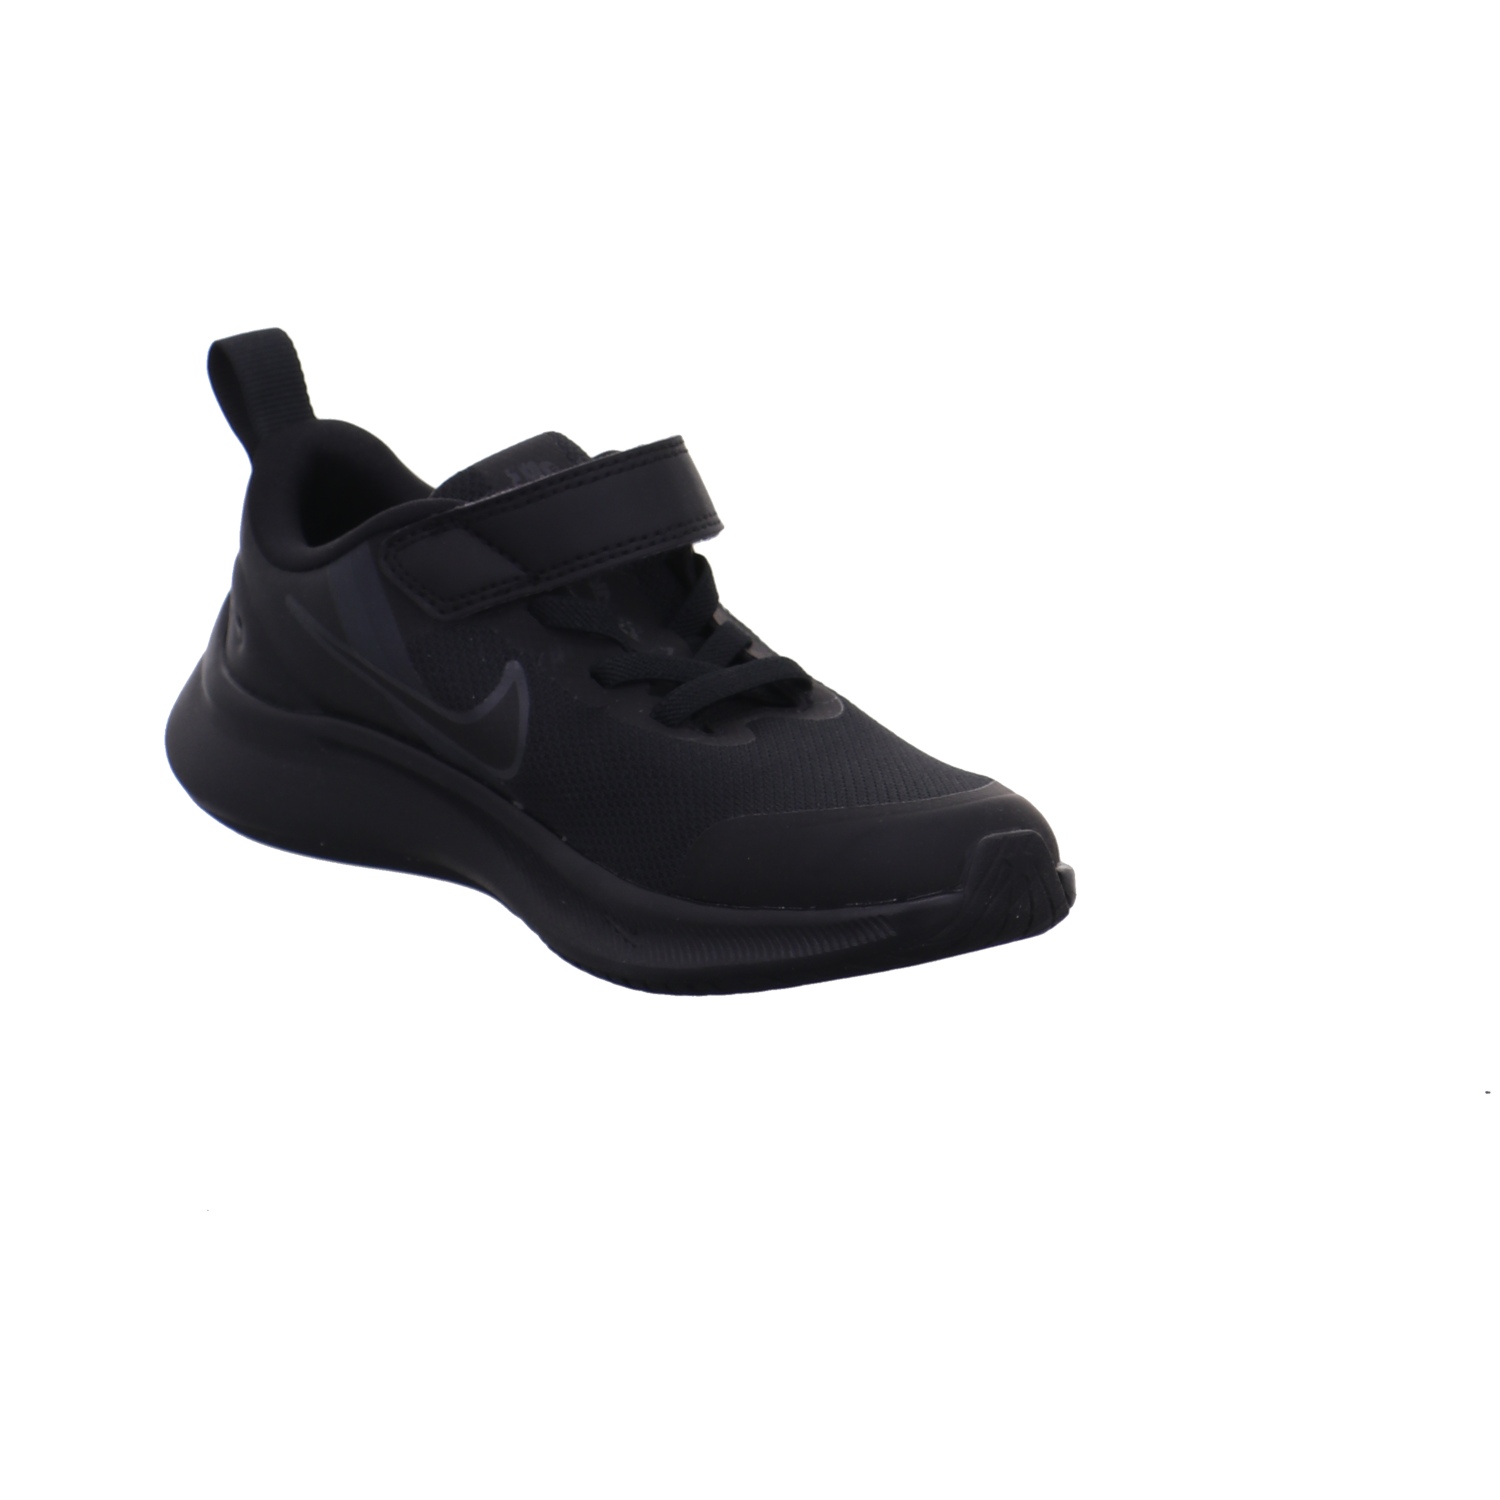 Nike Halbschuhe schwarz Bild7